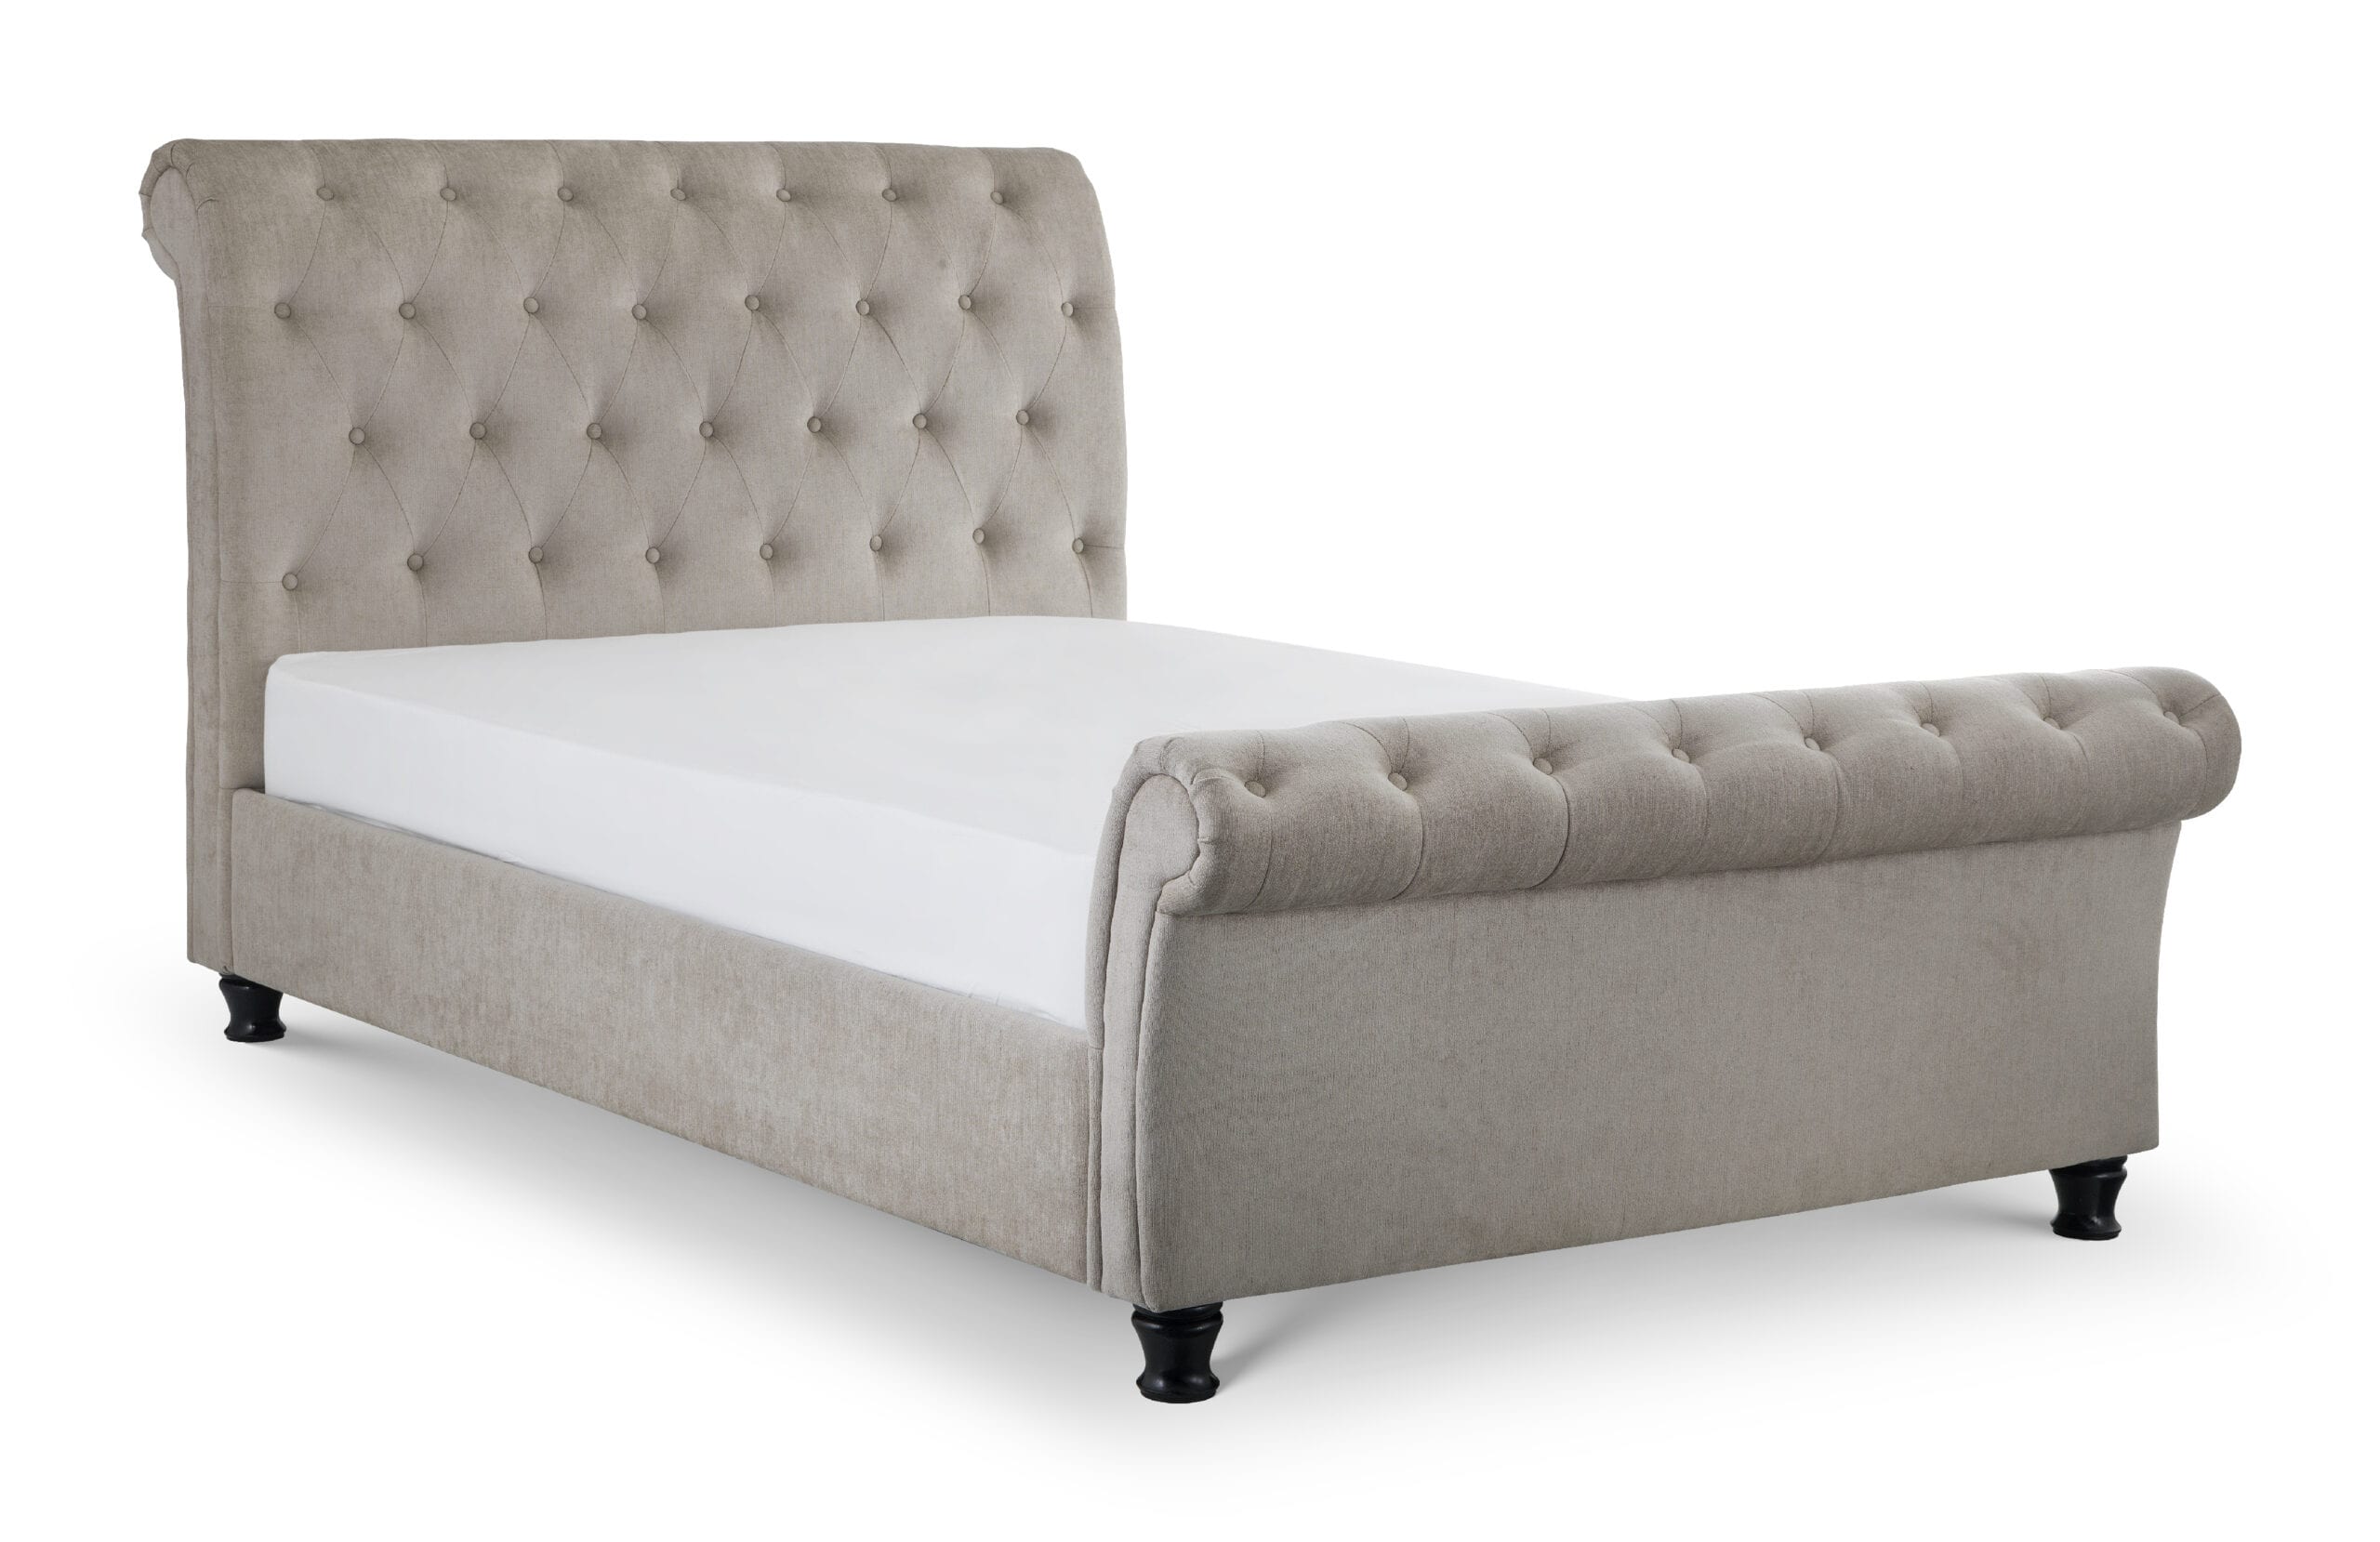 Caravegio Fabric Bed 135Cm